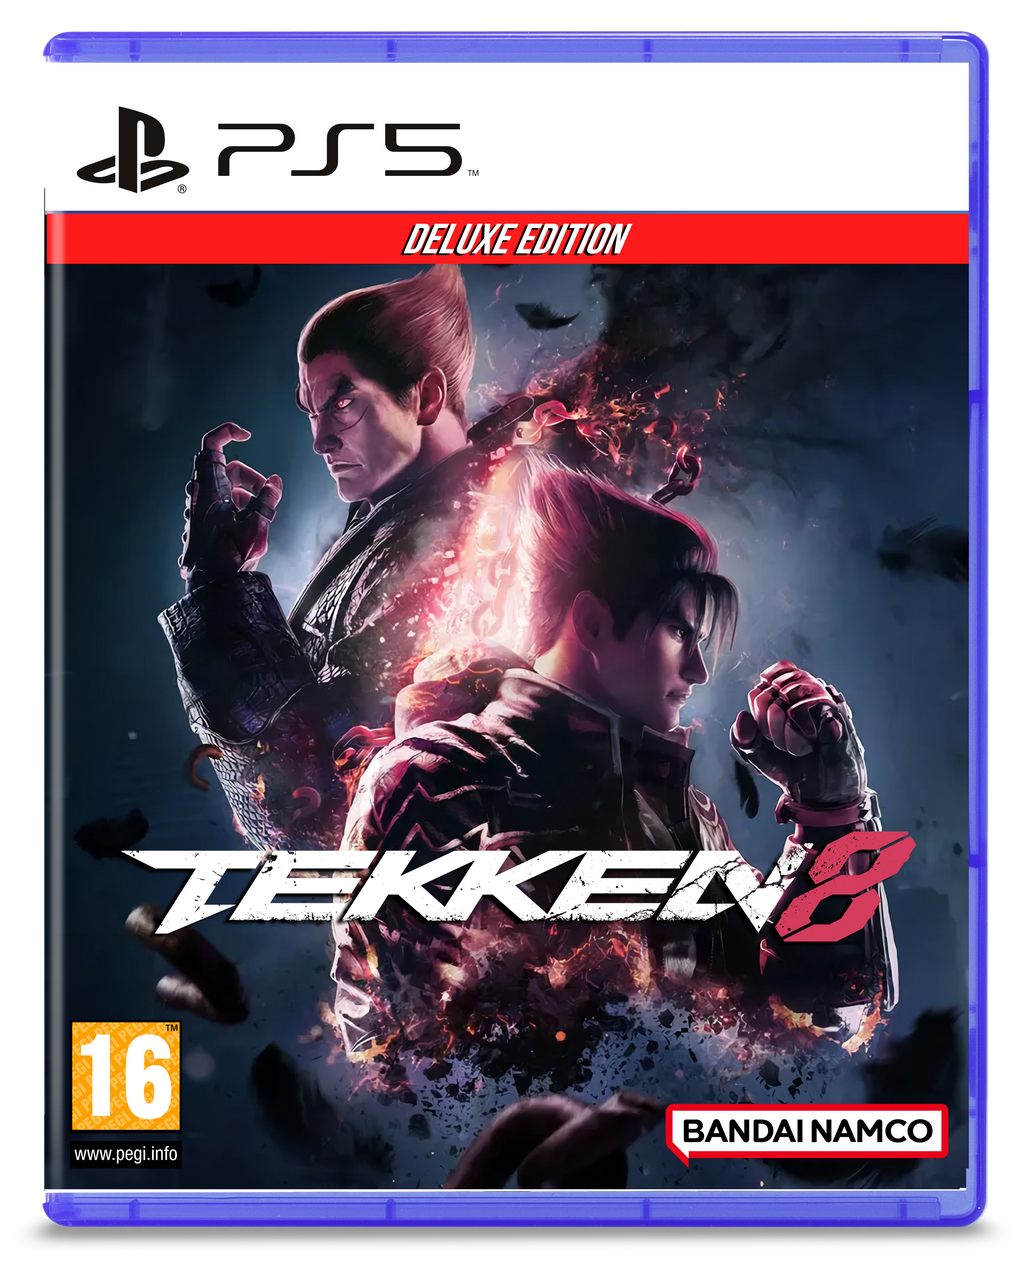 Tekken 8 Re-Design Cover (Deluxe Ver.) by KaitenkzGraphix on DeviantArt